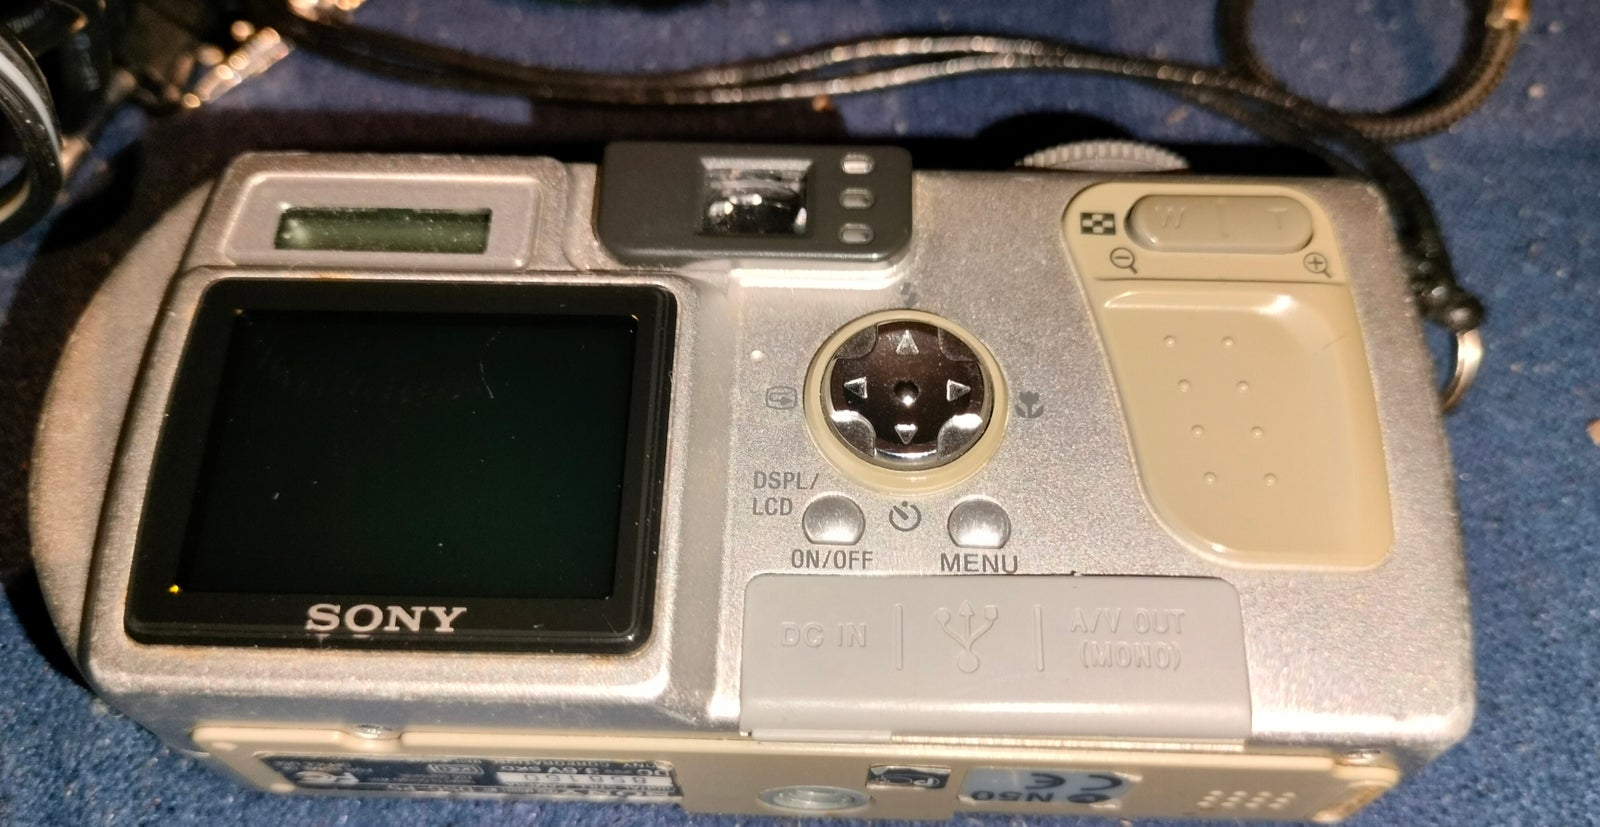 Sony, Dcs-P52, 3.2 megapixels